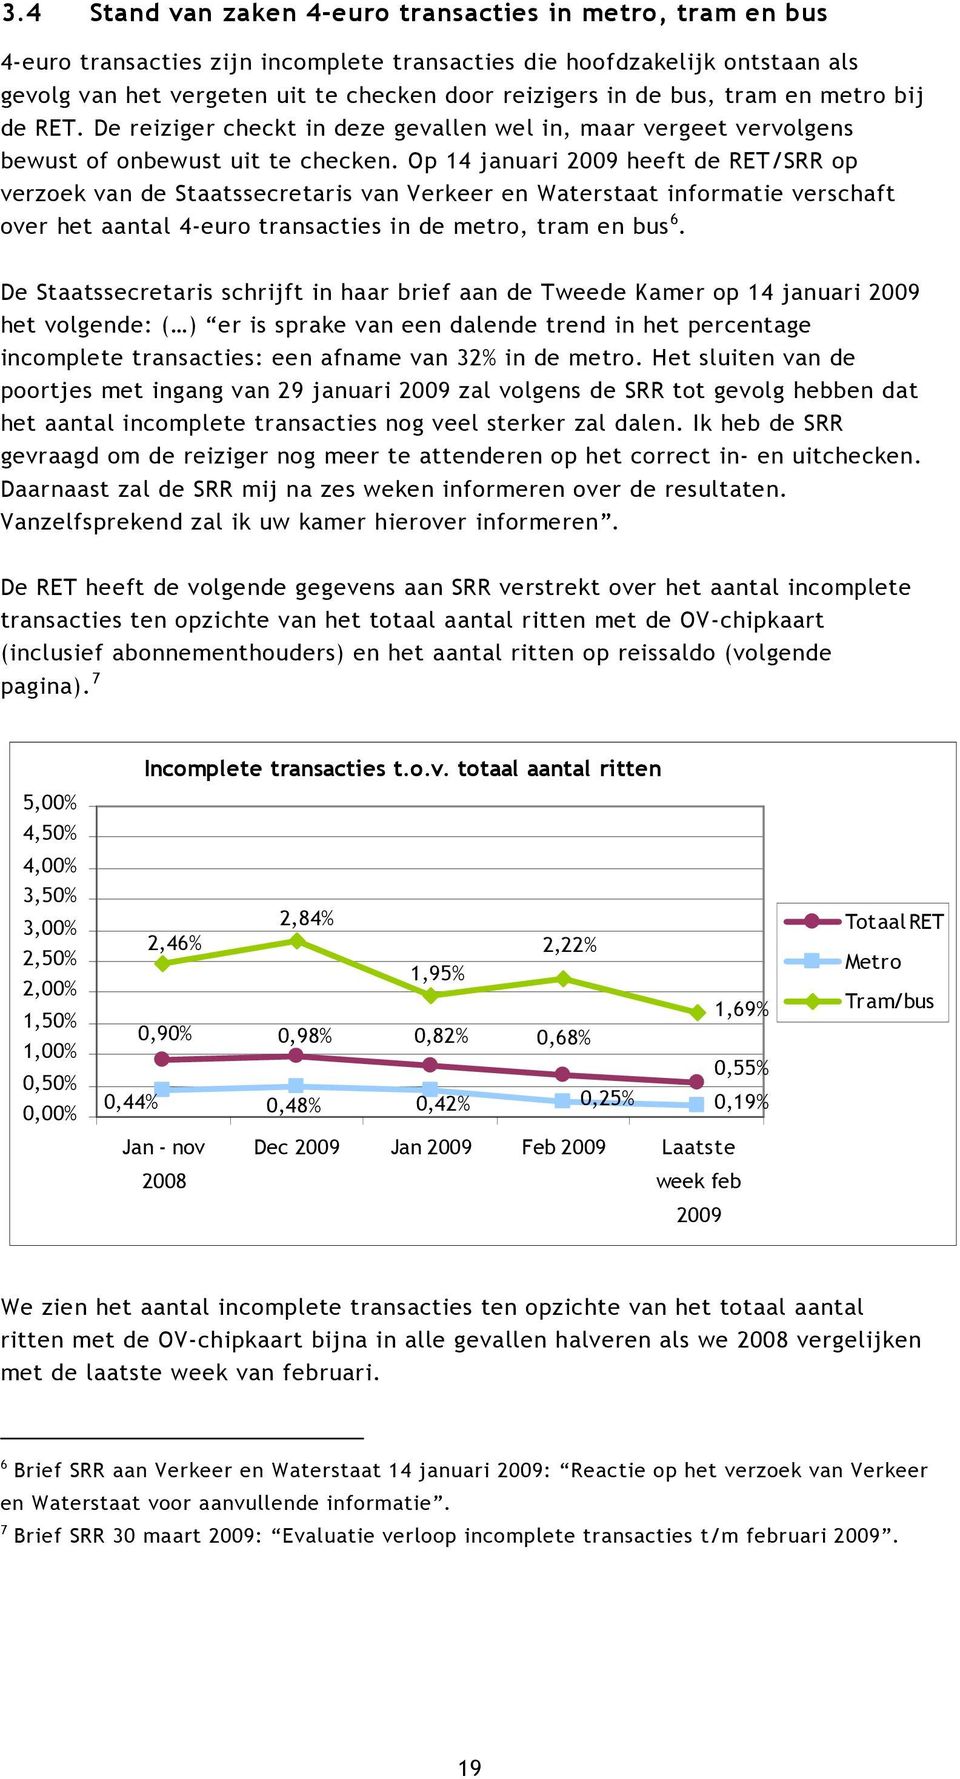 Op 14 januari 2009 heeft de RET/SRR op verzoek van de Staatssecretaris van Verkeer en Waterstaat informatie verschaft over het aantal 4-euro transacties in de metro, tram en bus 6.